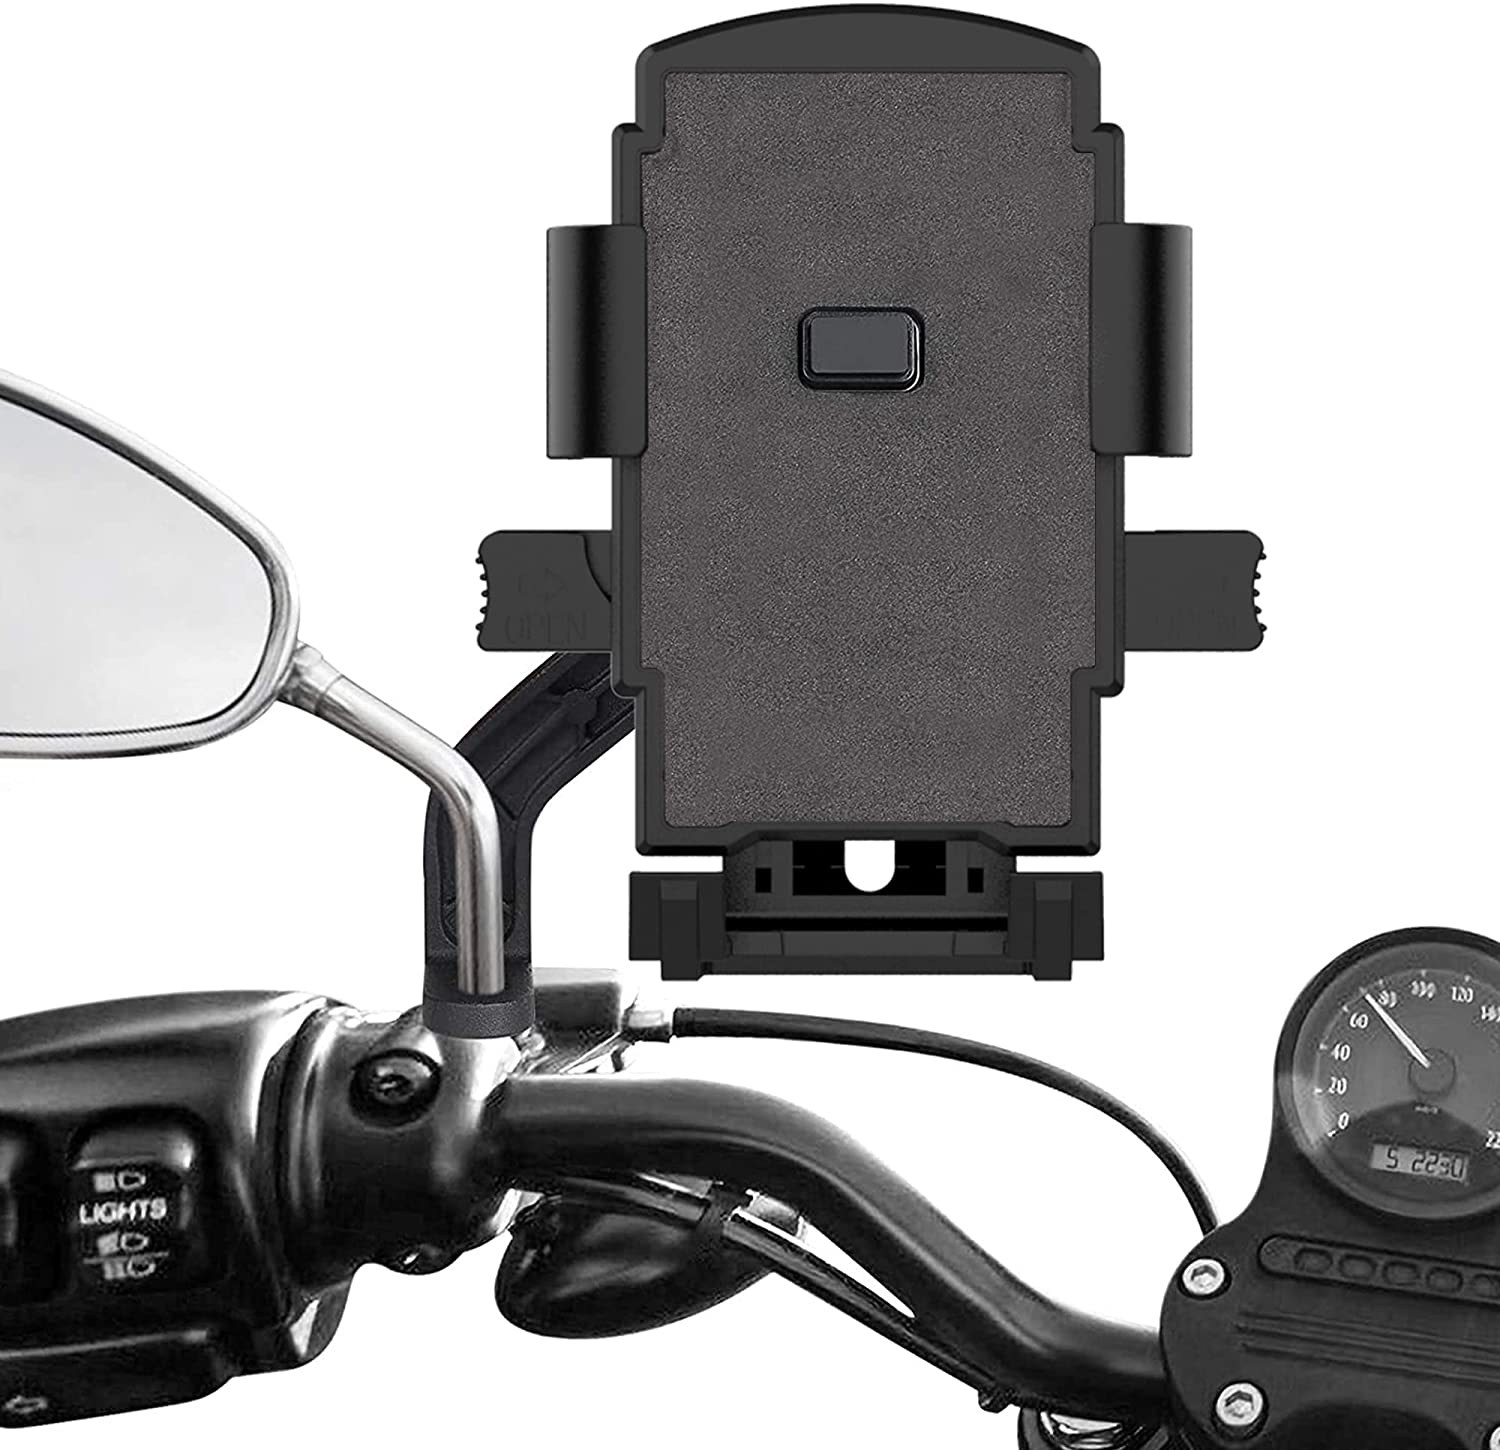 947円 新作モデル Tiakia バイク スマホ ホルダー 原付 携帯ホルダー スタンド オートバイ スマートフォン振れ止め 脱落防止 GPSナビ 携帯